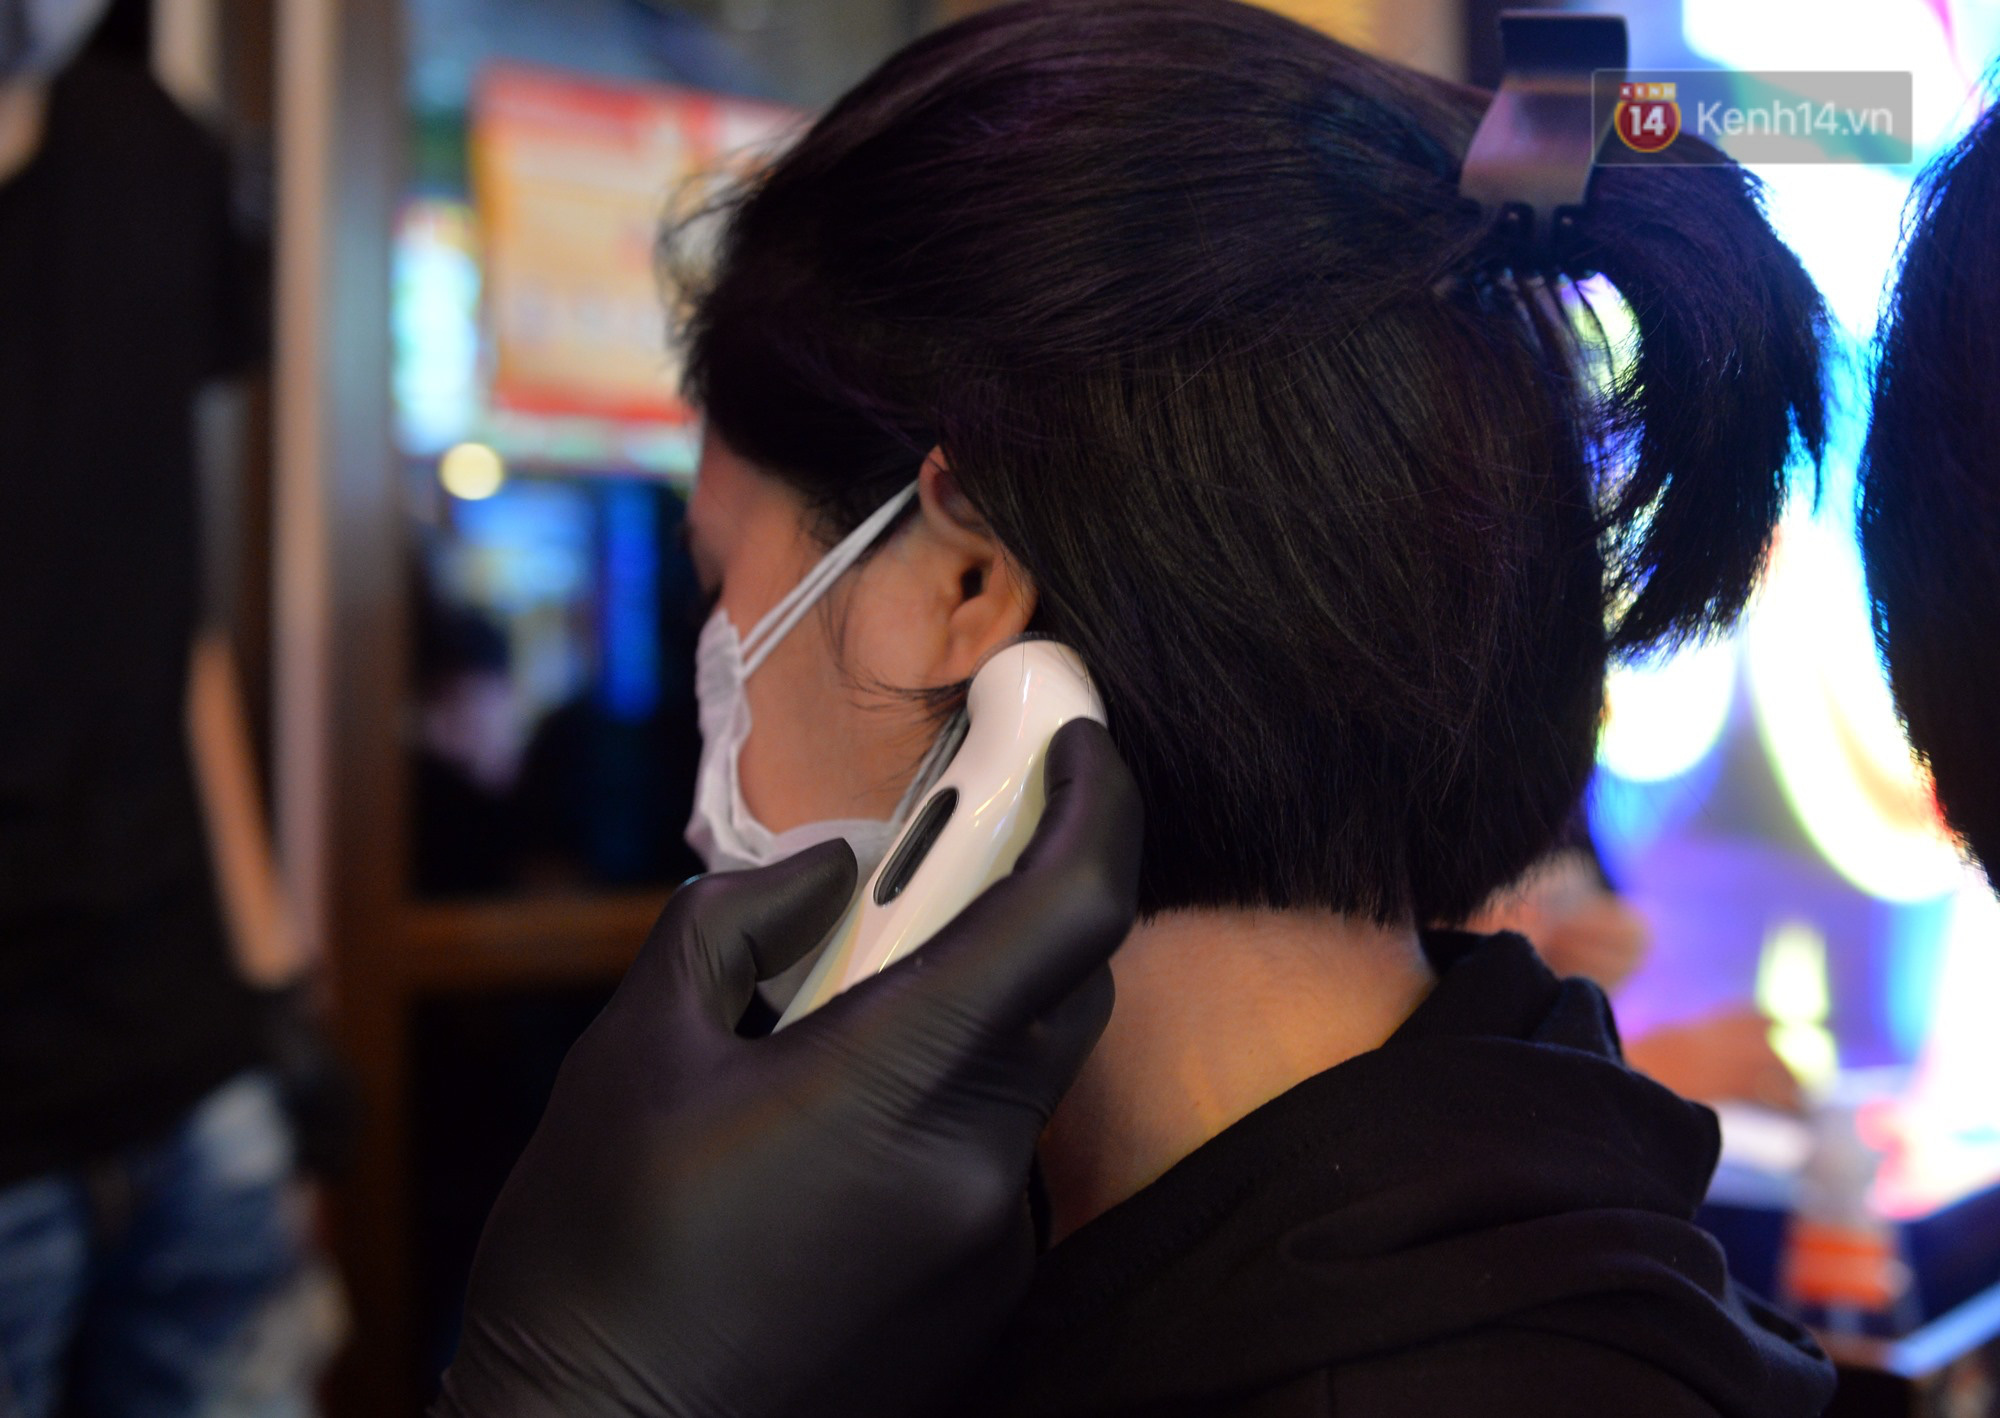 DJ và nhân viên các quán bar, karaoke được khuyến cáo đeo khẩu trang, thực hiện các biện pháp phòng dịch Covid-19 - Ảnh 9.